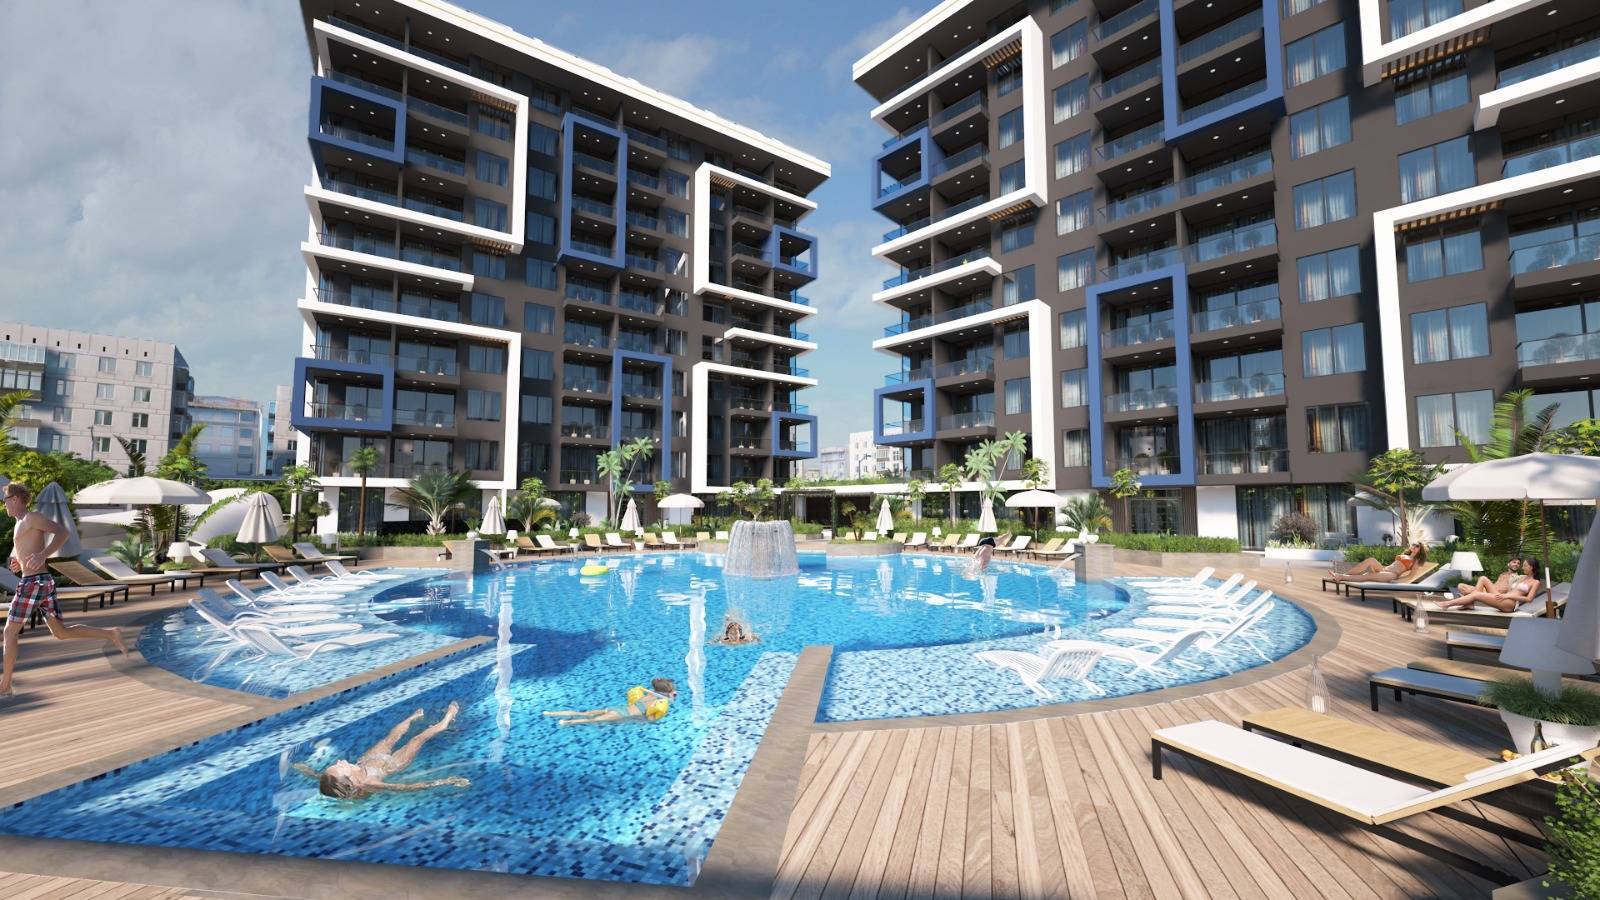 Neue Wohnungen zum Verkauf in der Türkei - Stadtzentrum von Alanya